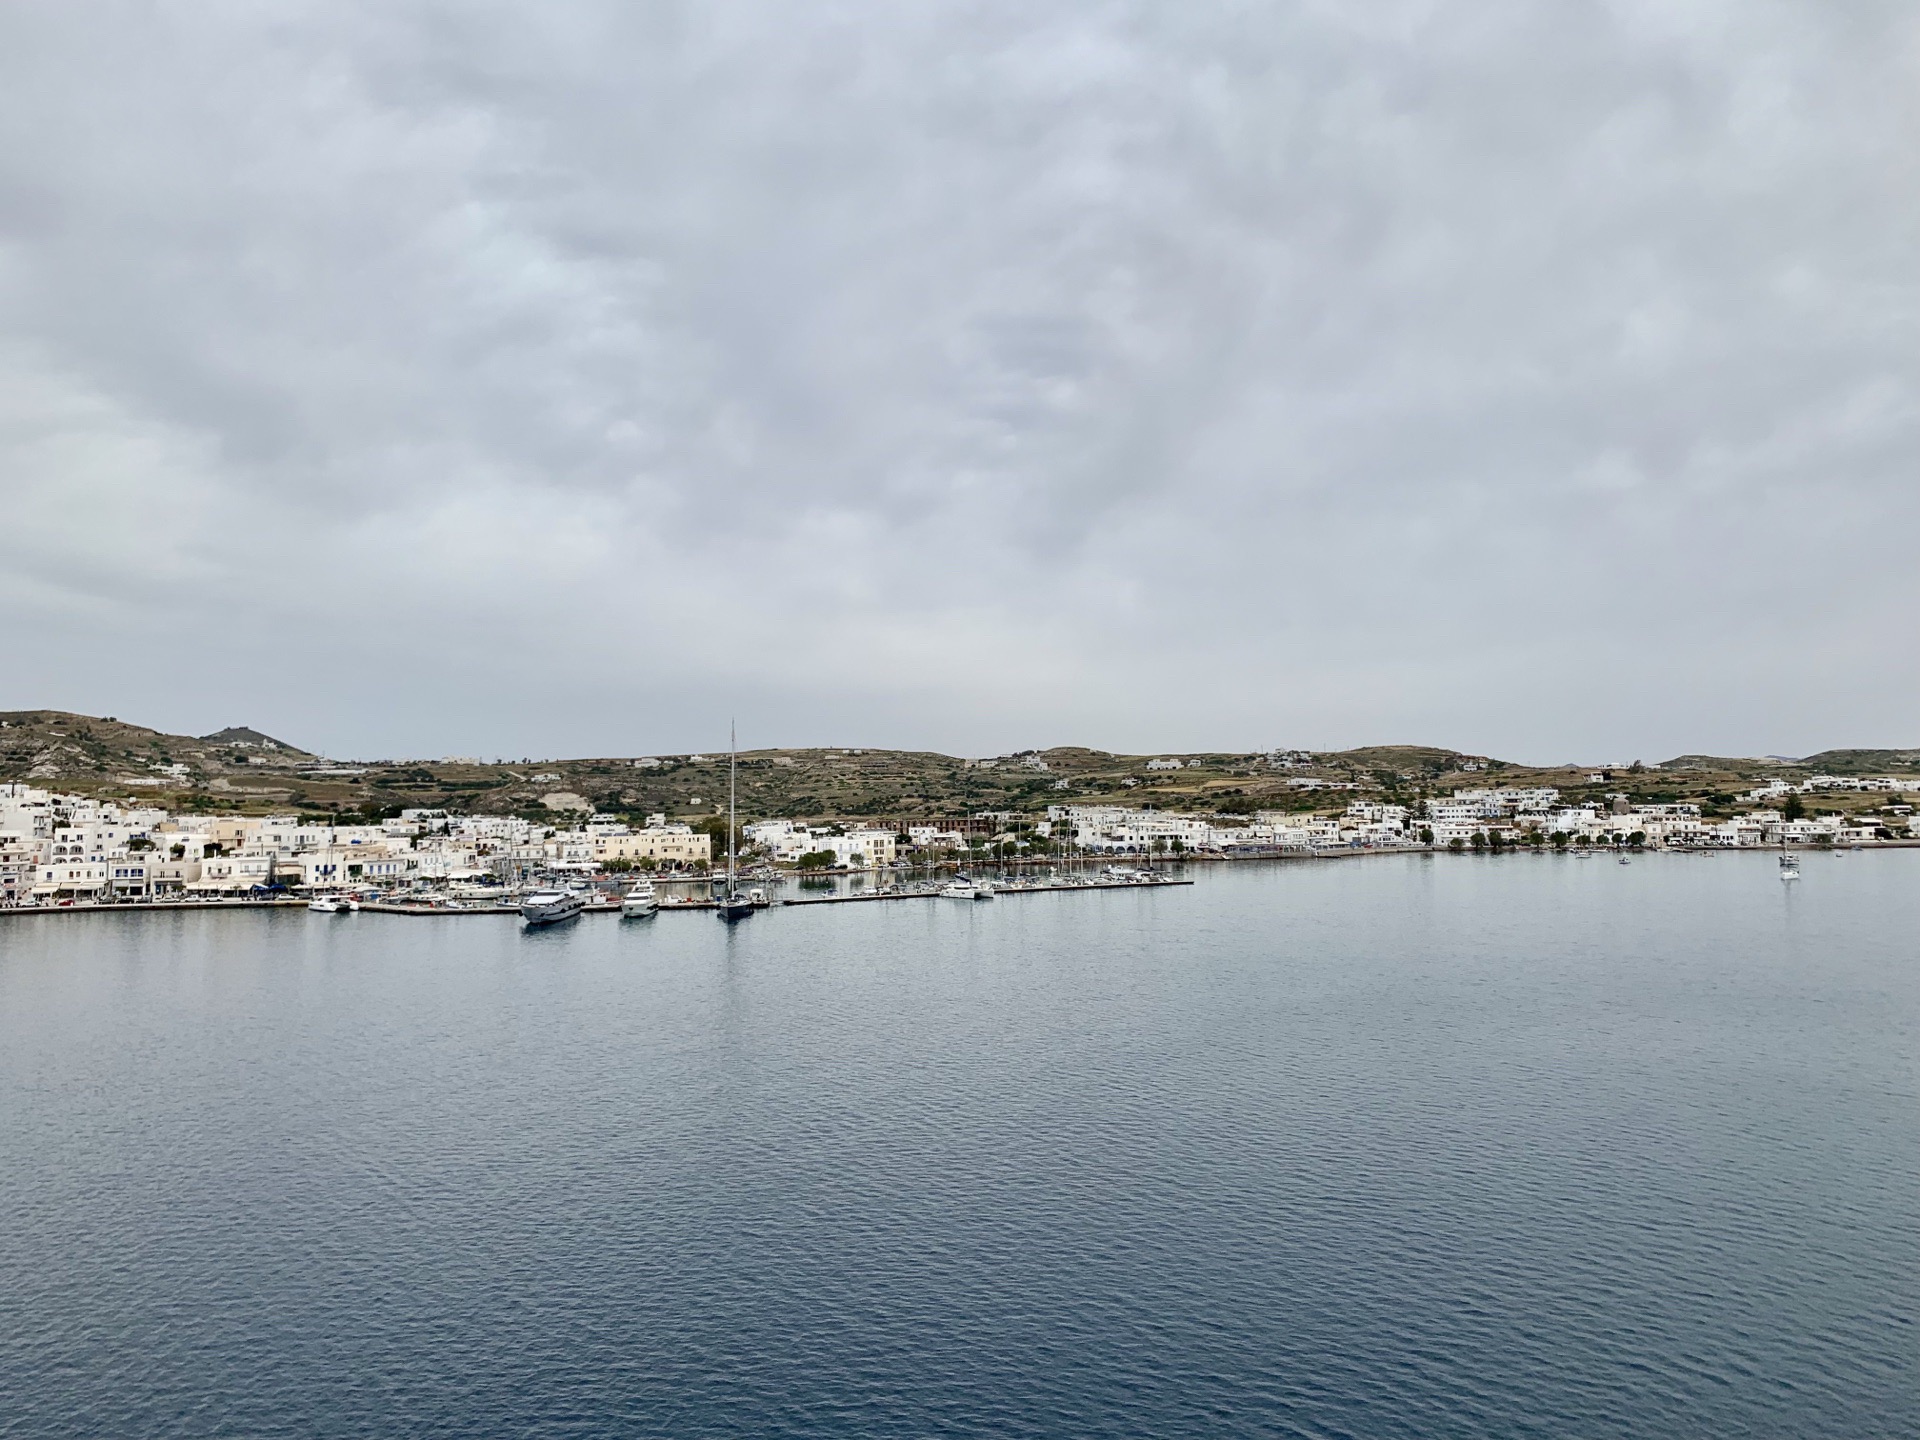 早晨7:00从米克诺斯岛(Mykonos )启航,午间12:30停靠希腊米洛斯岛(Milos);邮轮